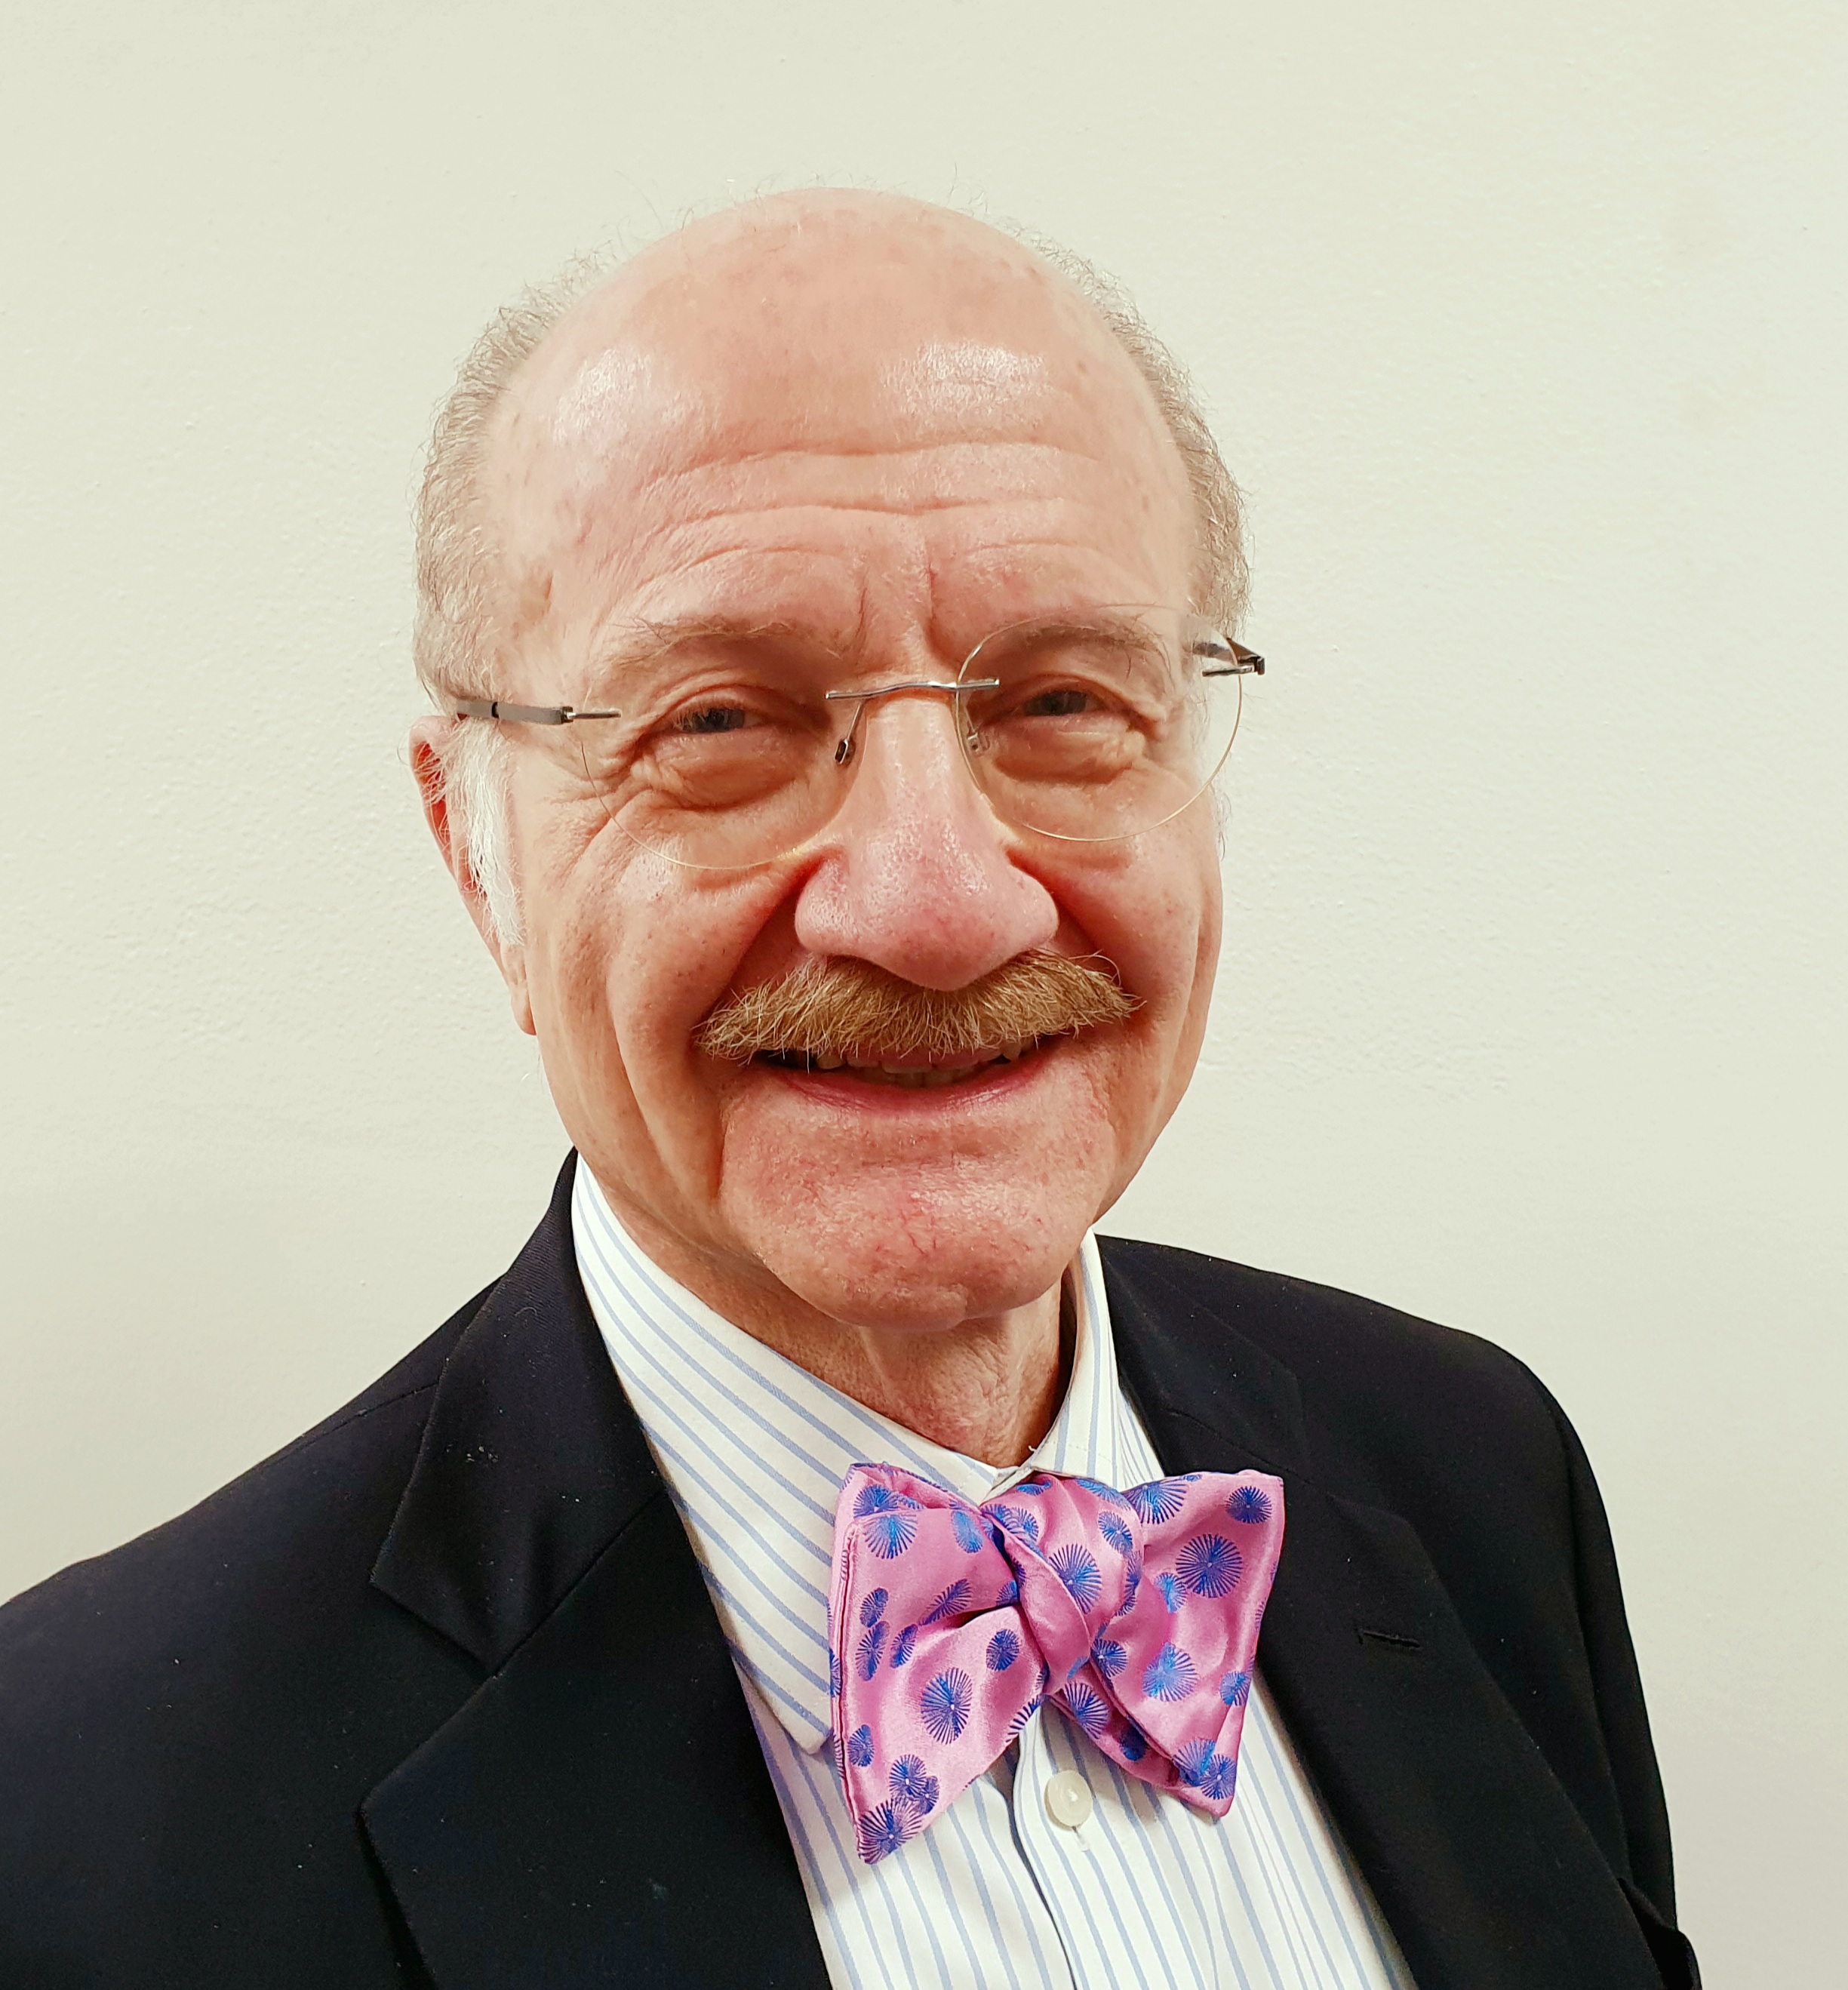 Professor Zoltan Endre